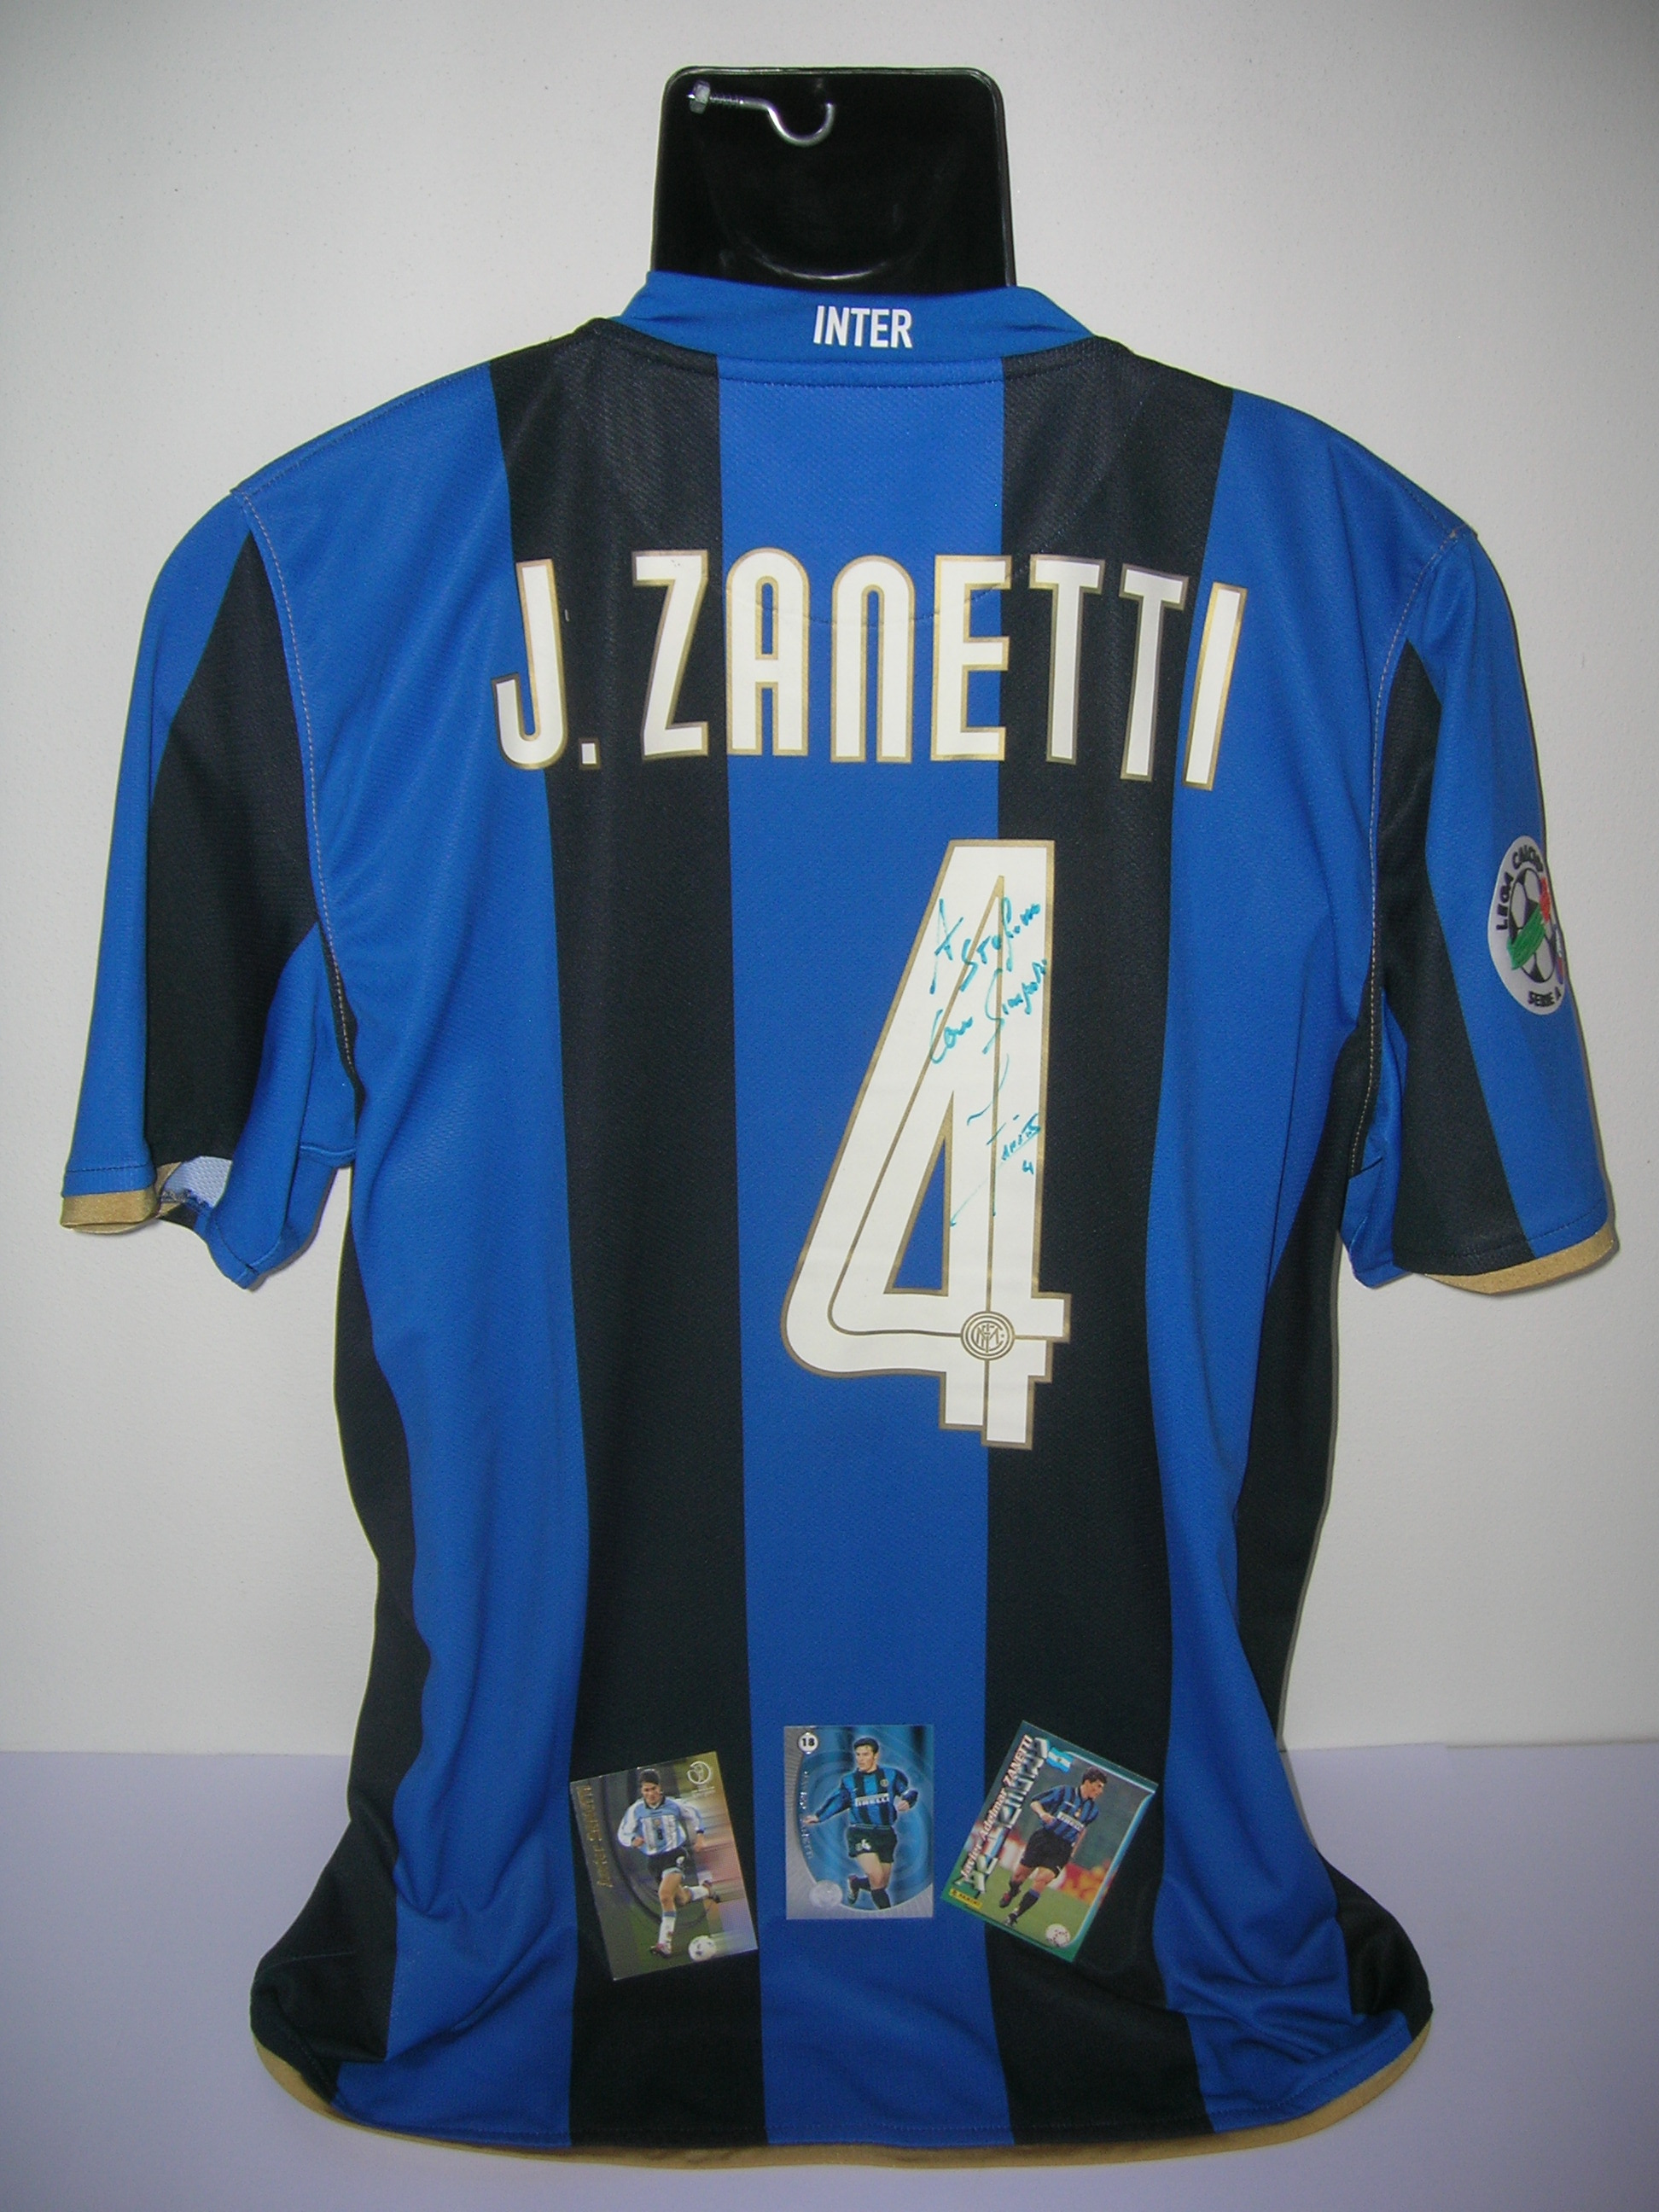 Zanetti J. n.4 Inter  B